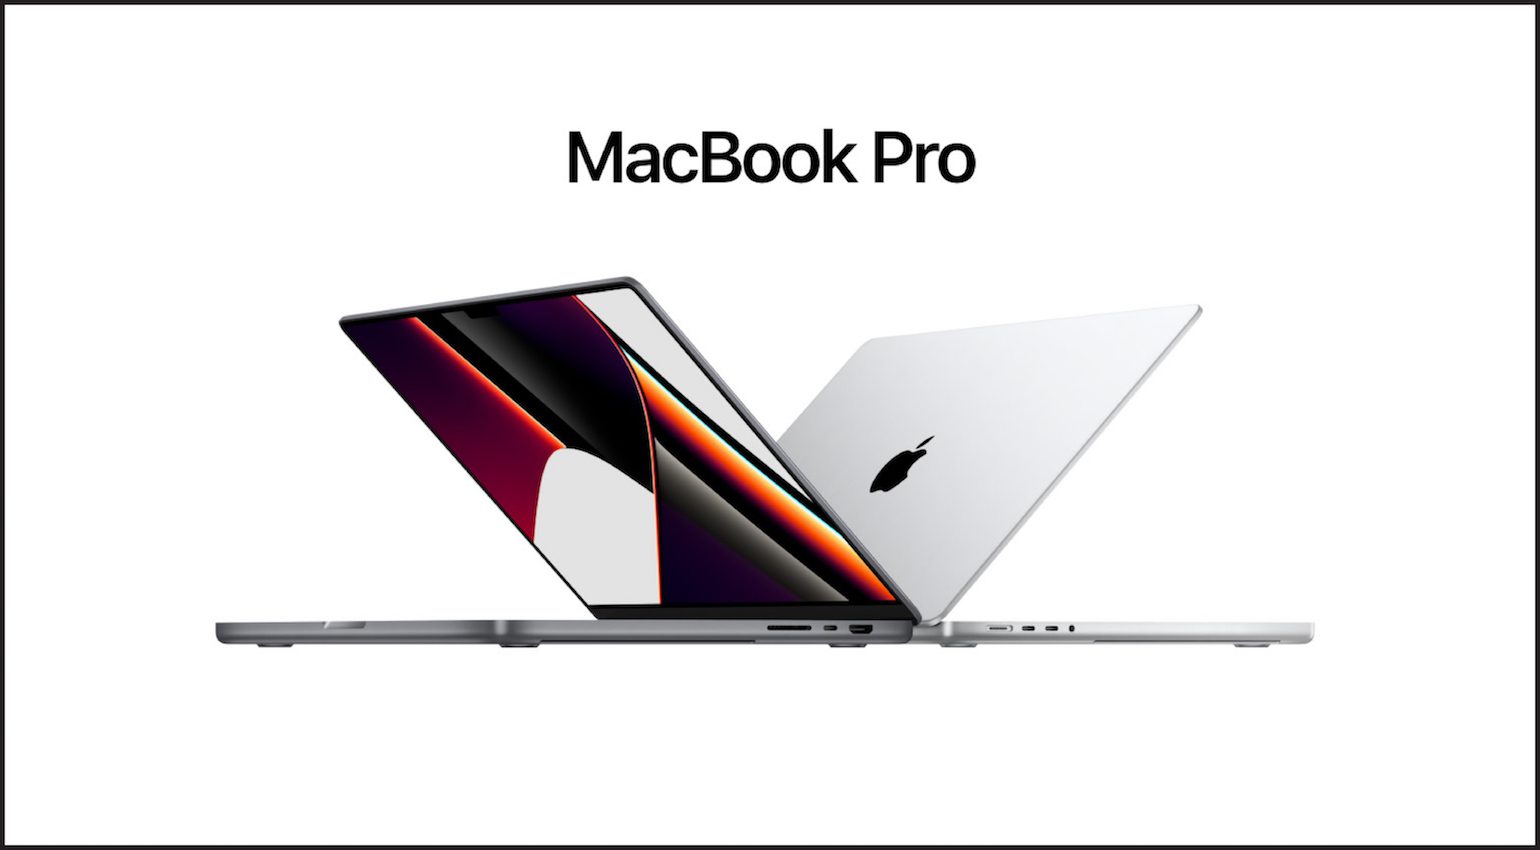 Apple Unleashed : 2 nouveaux modèles de Macbook Pro avec puces M1 Pro et M1 Max